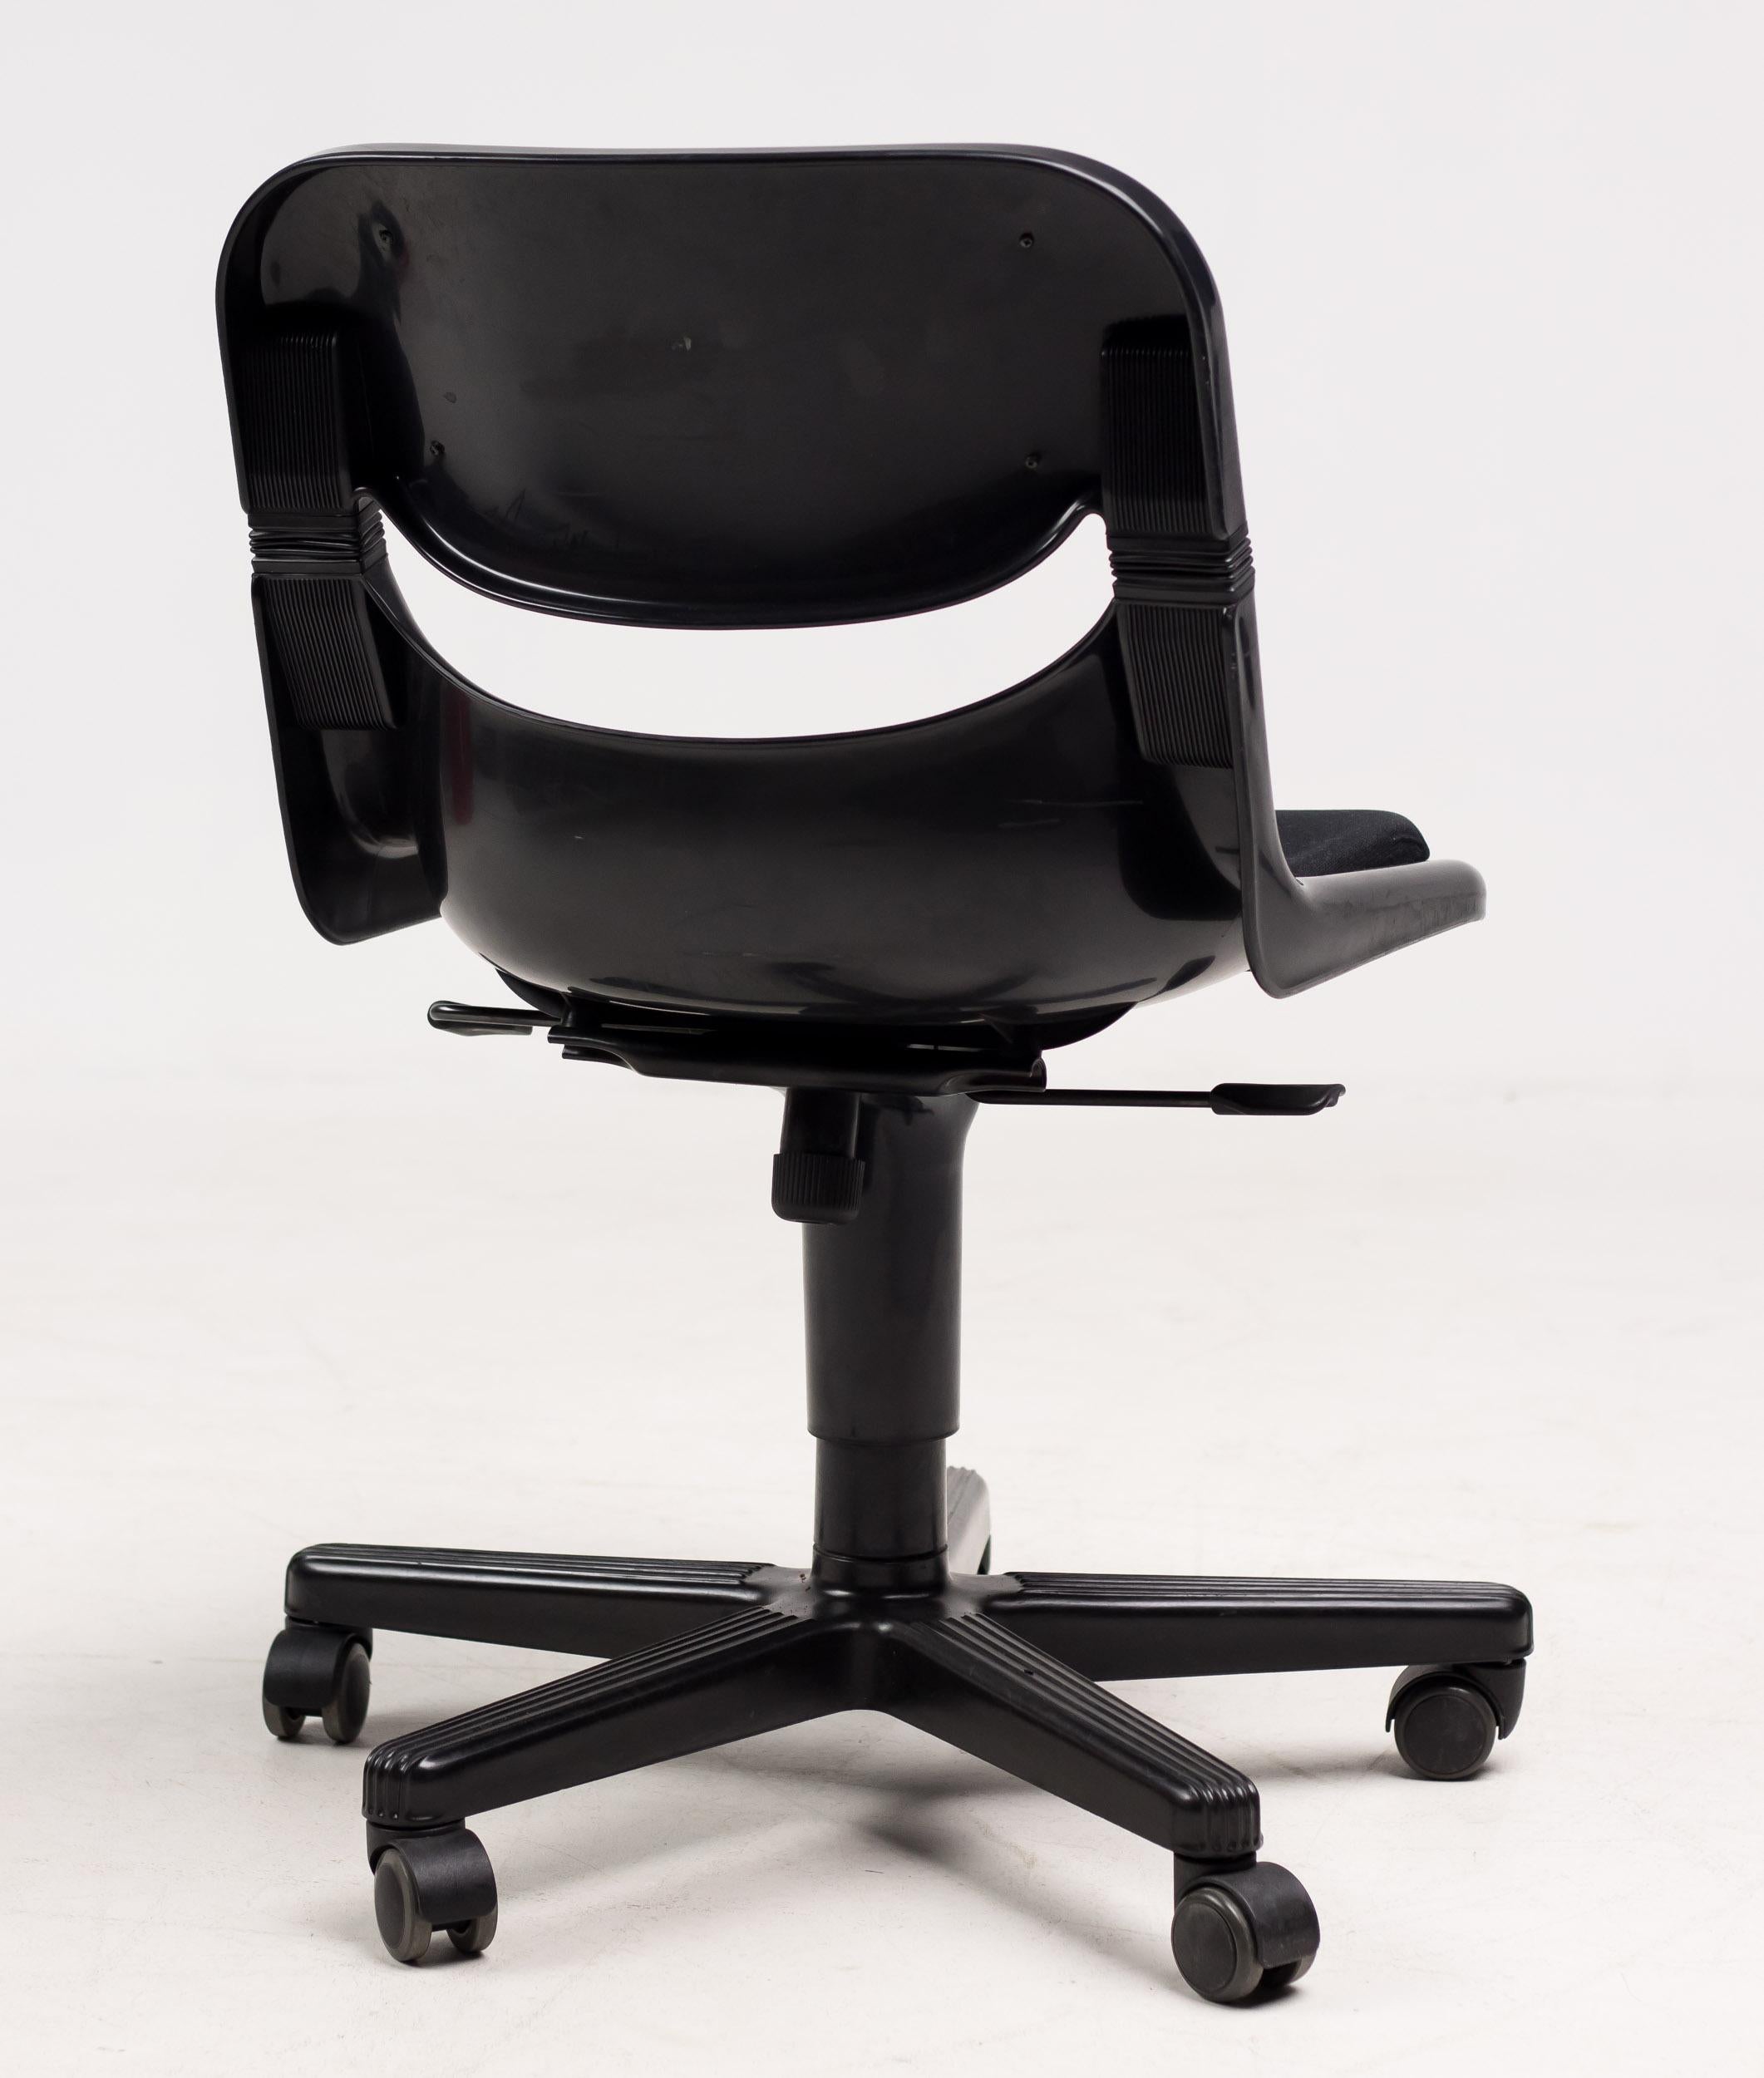 dorsal office chair